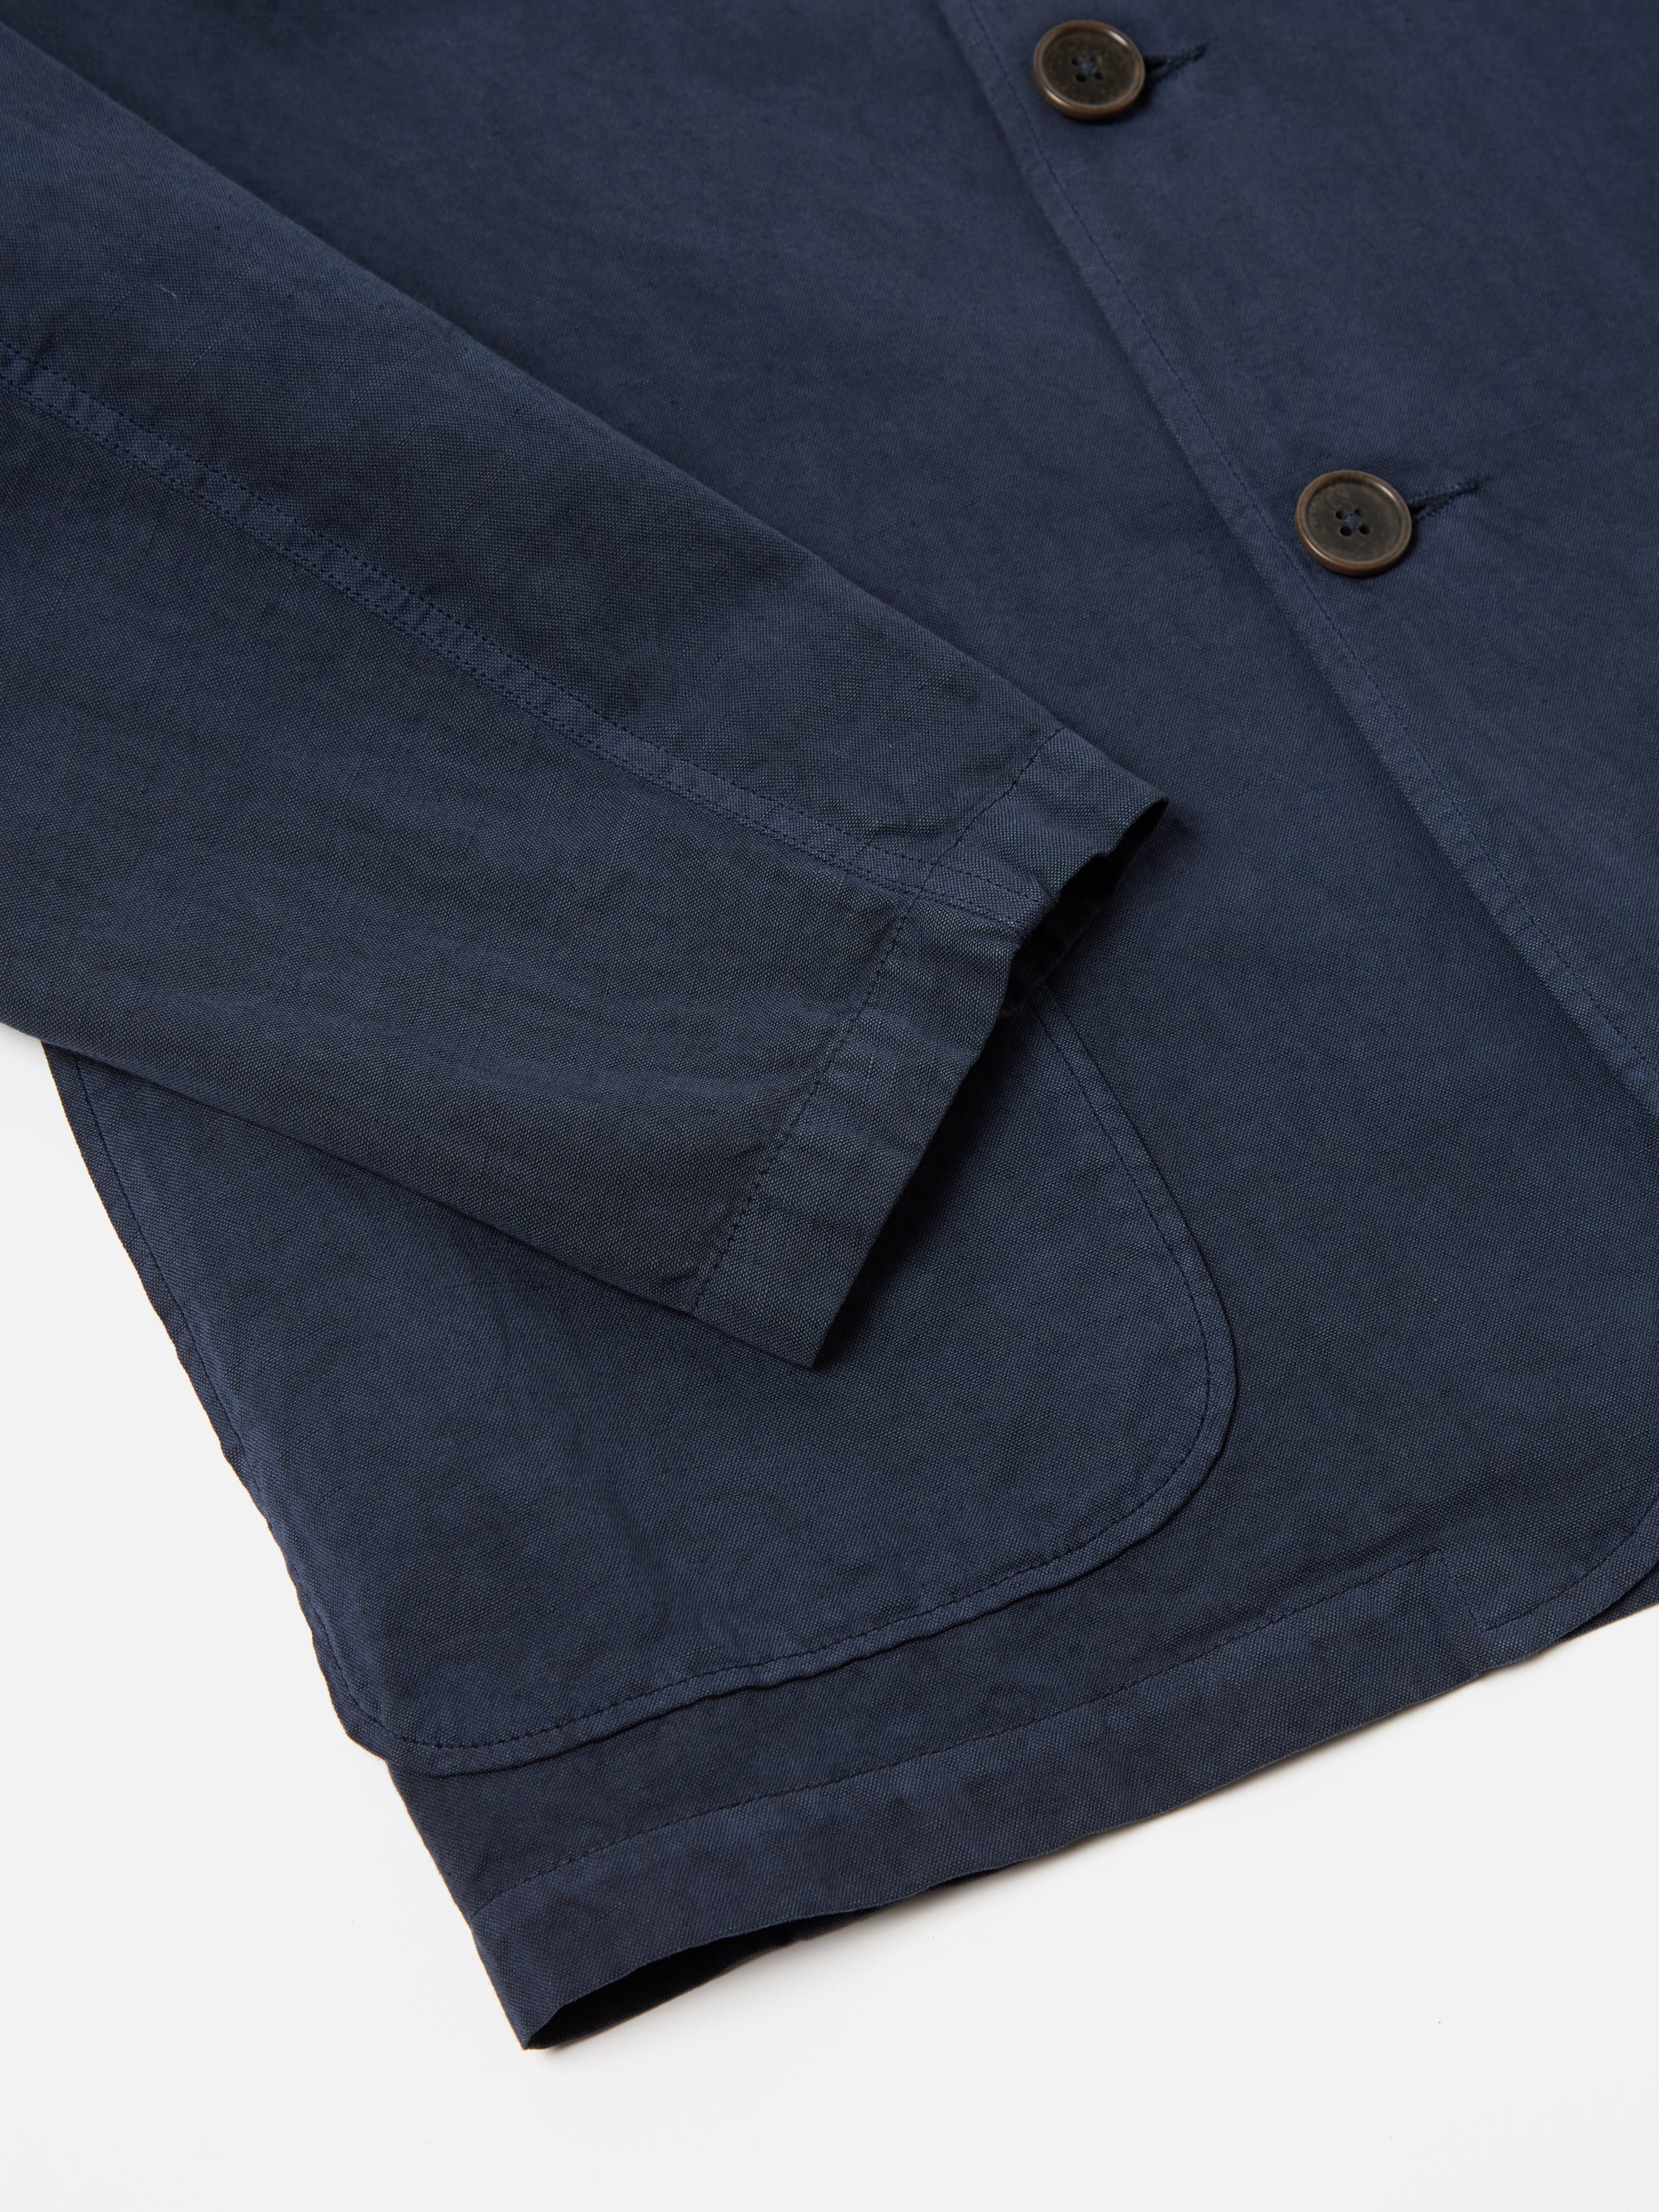 Universal Works Three Button Jacket in Navy Linen Slub Weave